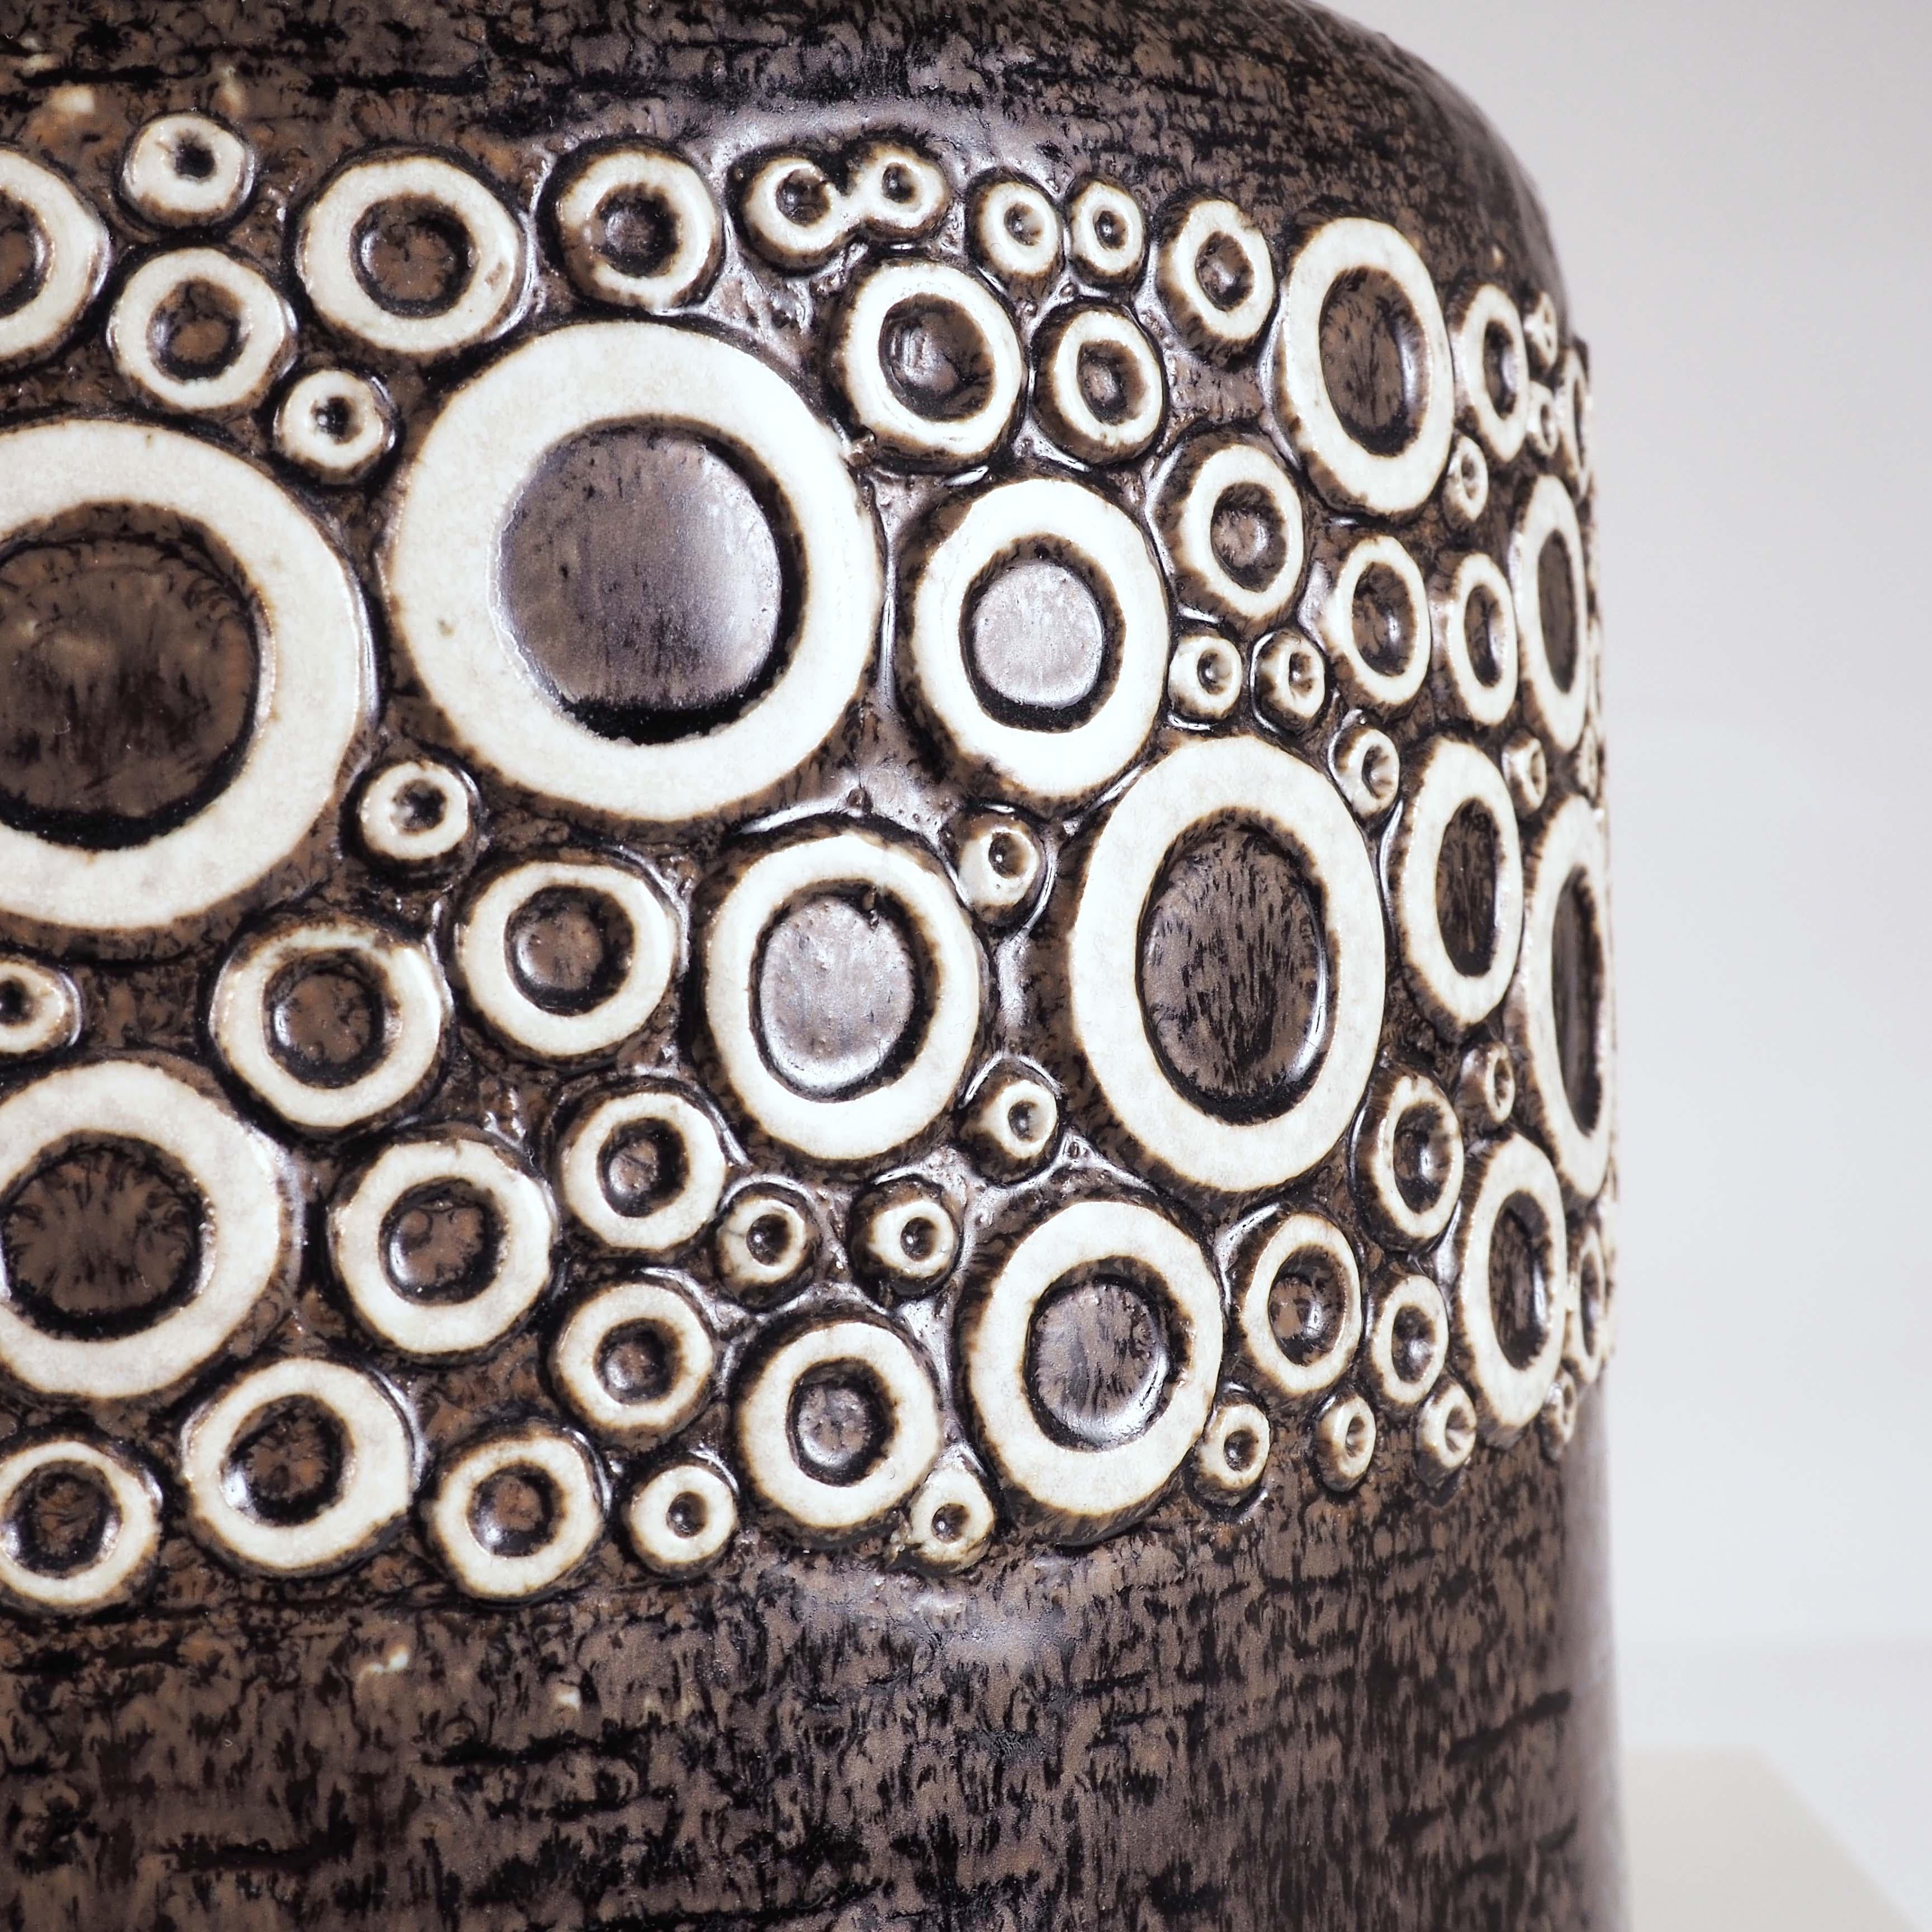 Britt-Louise Sundell war drei Jahrzehnte lang mit Gustavsberg verbunden. Sie entwarf Tafelgeschirr und einzigartige Keramikstücke. Diese majestätische Vase wurde in Gustavsbergs Atelier hergestellt und hat als Zeichen der Handwerkskunst die